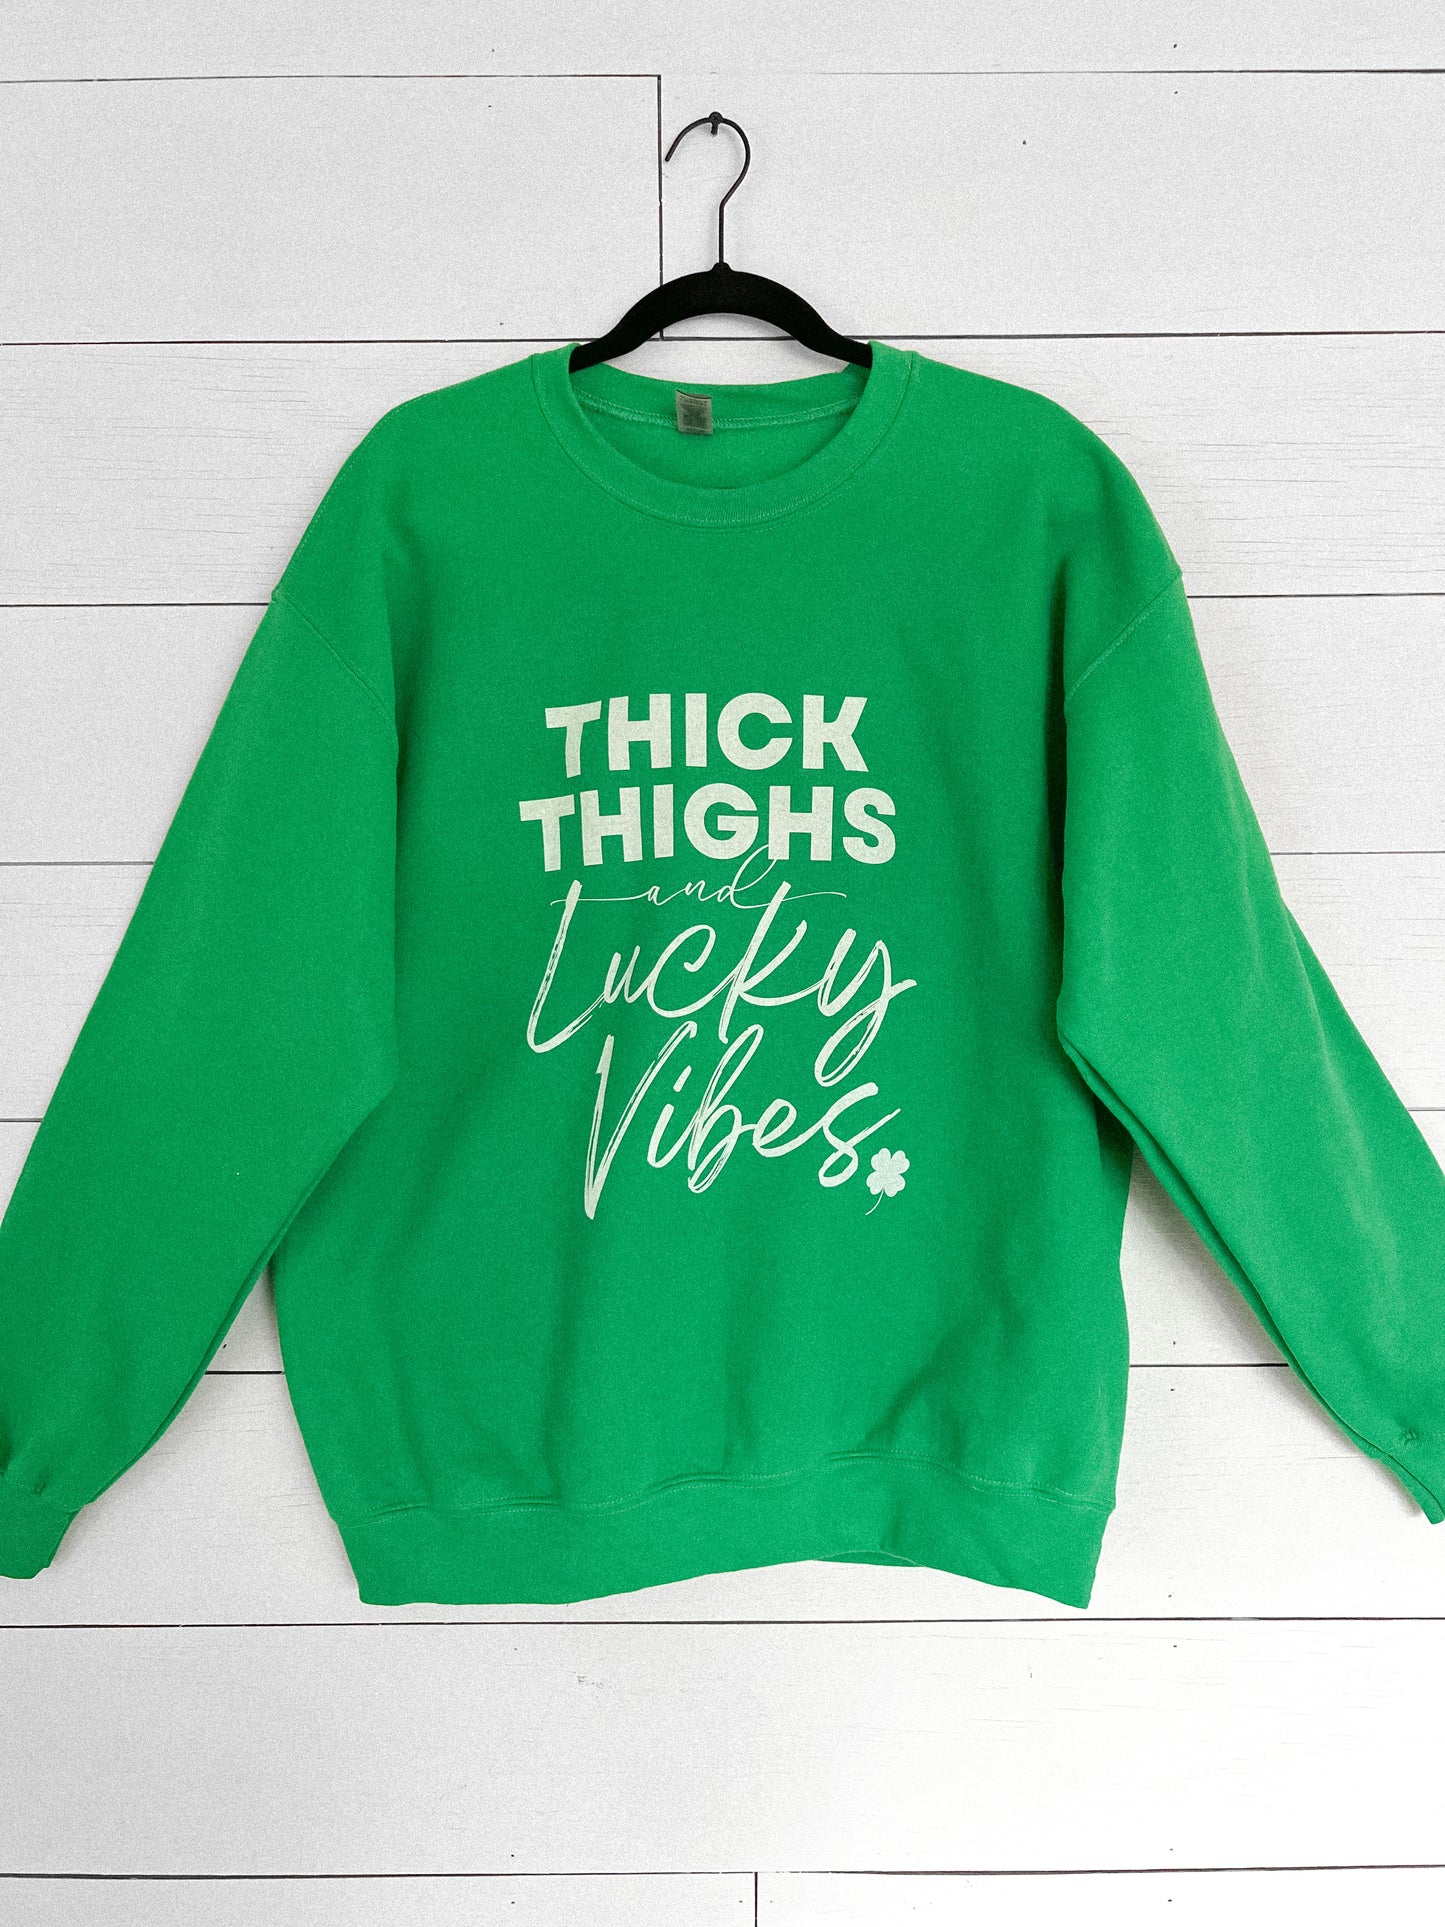 Lucky Vibes Crewneck Sweatshirt